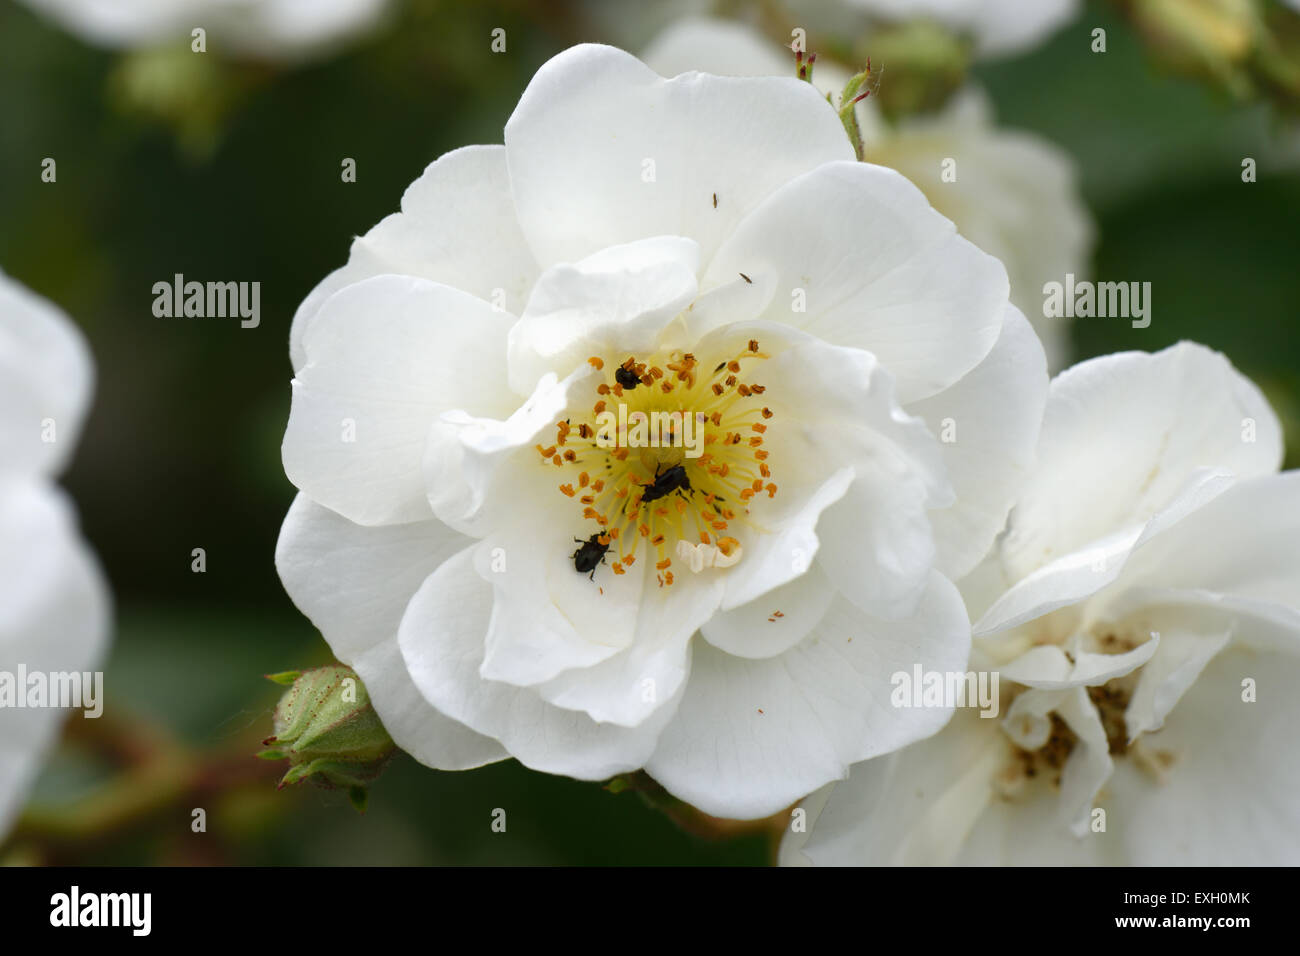 Weiße Blüten von einer weitläufigen Rektor rose mit Pollen Käfer, Berkshire, Juni Stockfoto